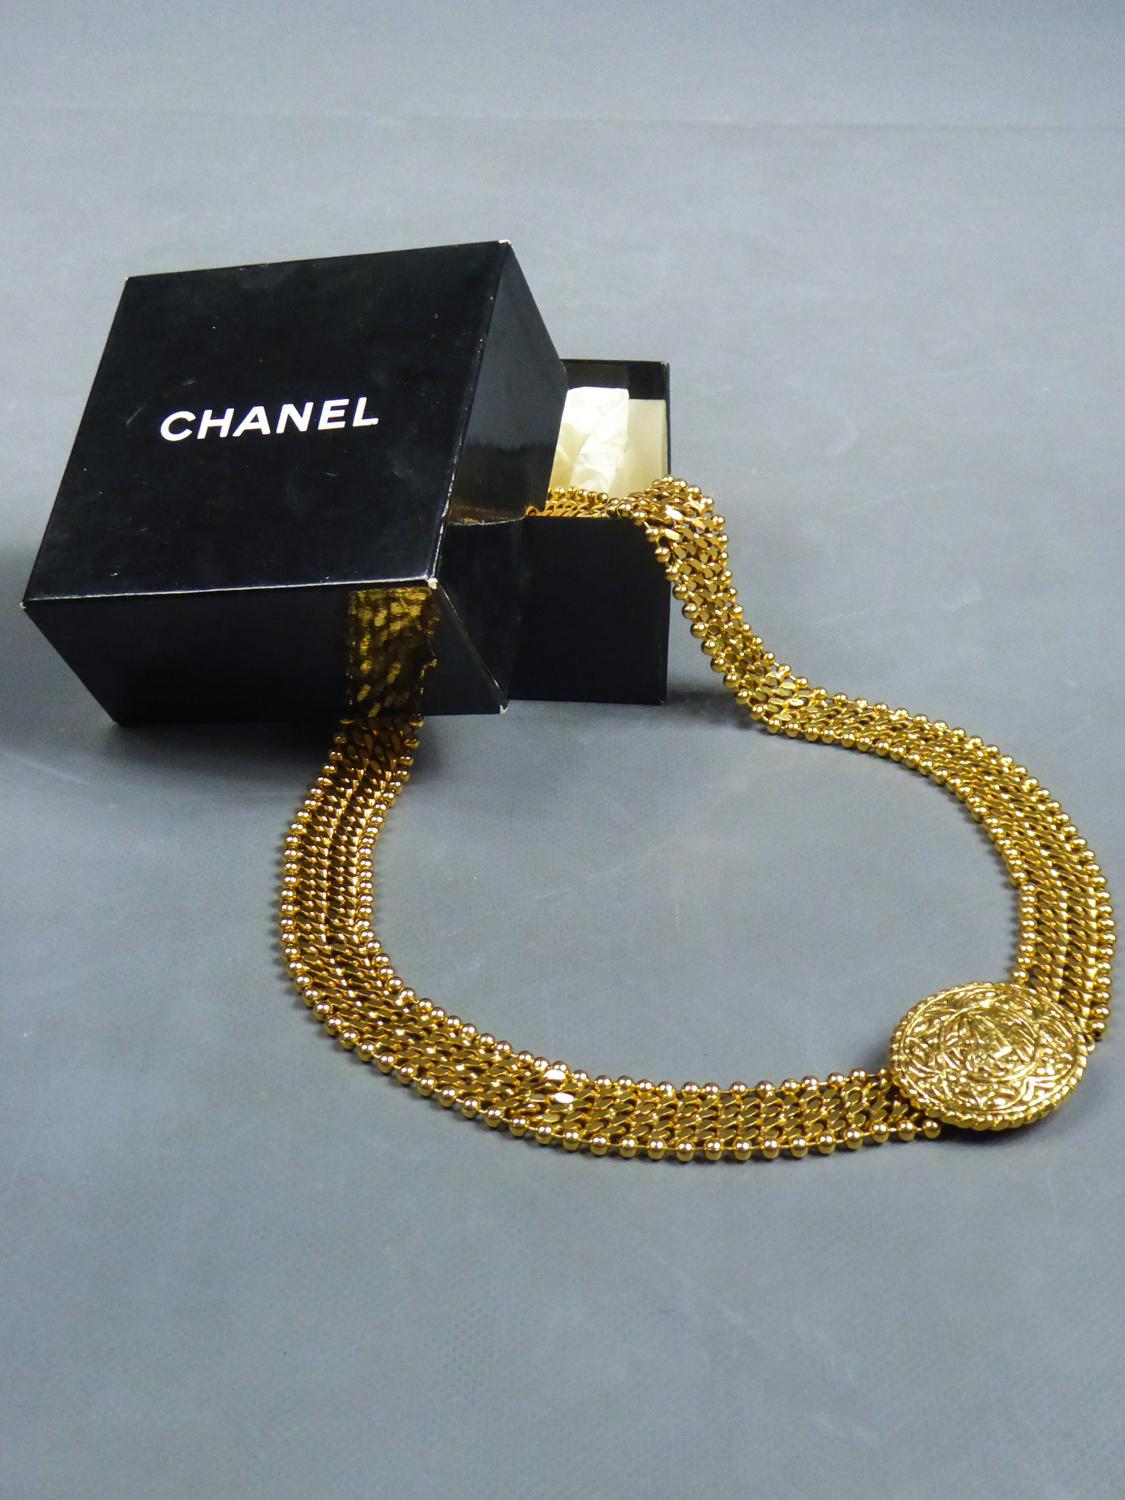 Circa 1970/1980
France

Magnifique ceinture de soirée en métal doré marquée par la Maison Chanel par le célèbre designer Robert Goossens et numérotée 6020. Étiquette C Chanel Made in France au dos du médaillon. Assemblage de deux chaînes à maillons